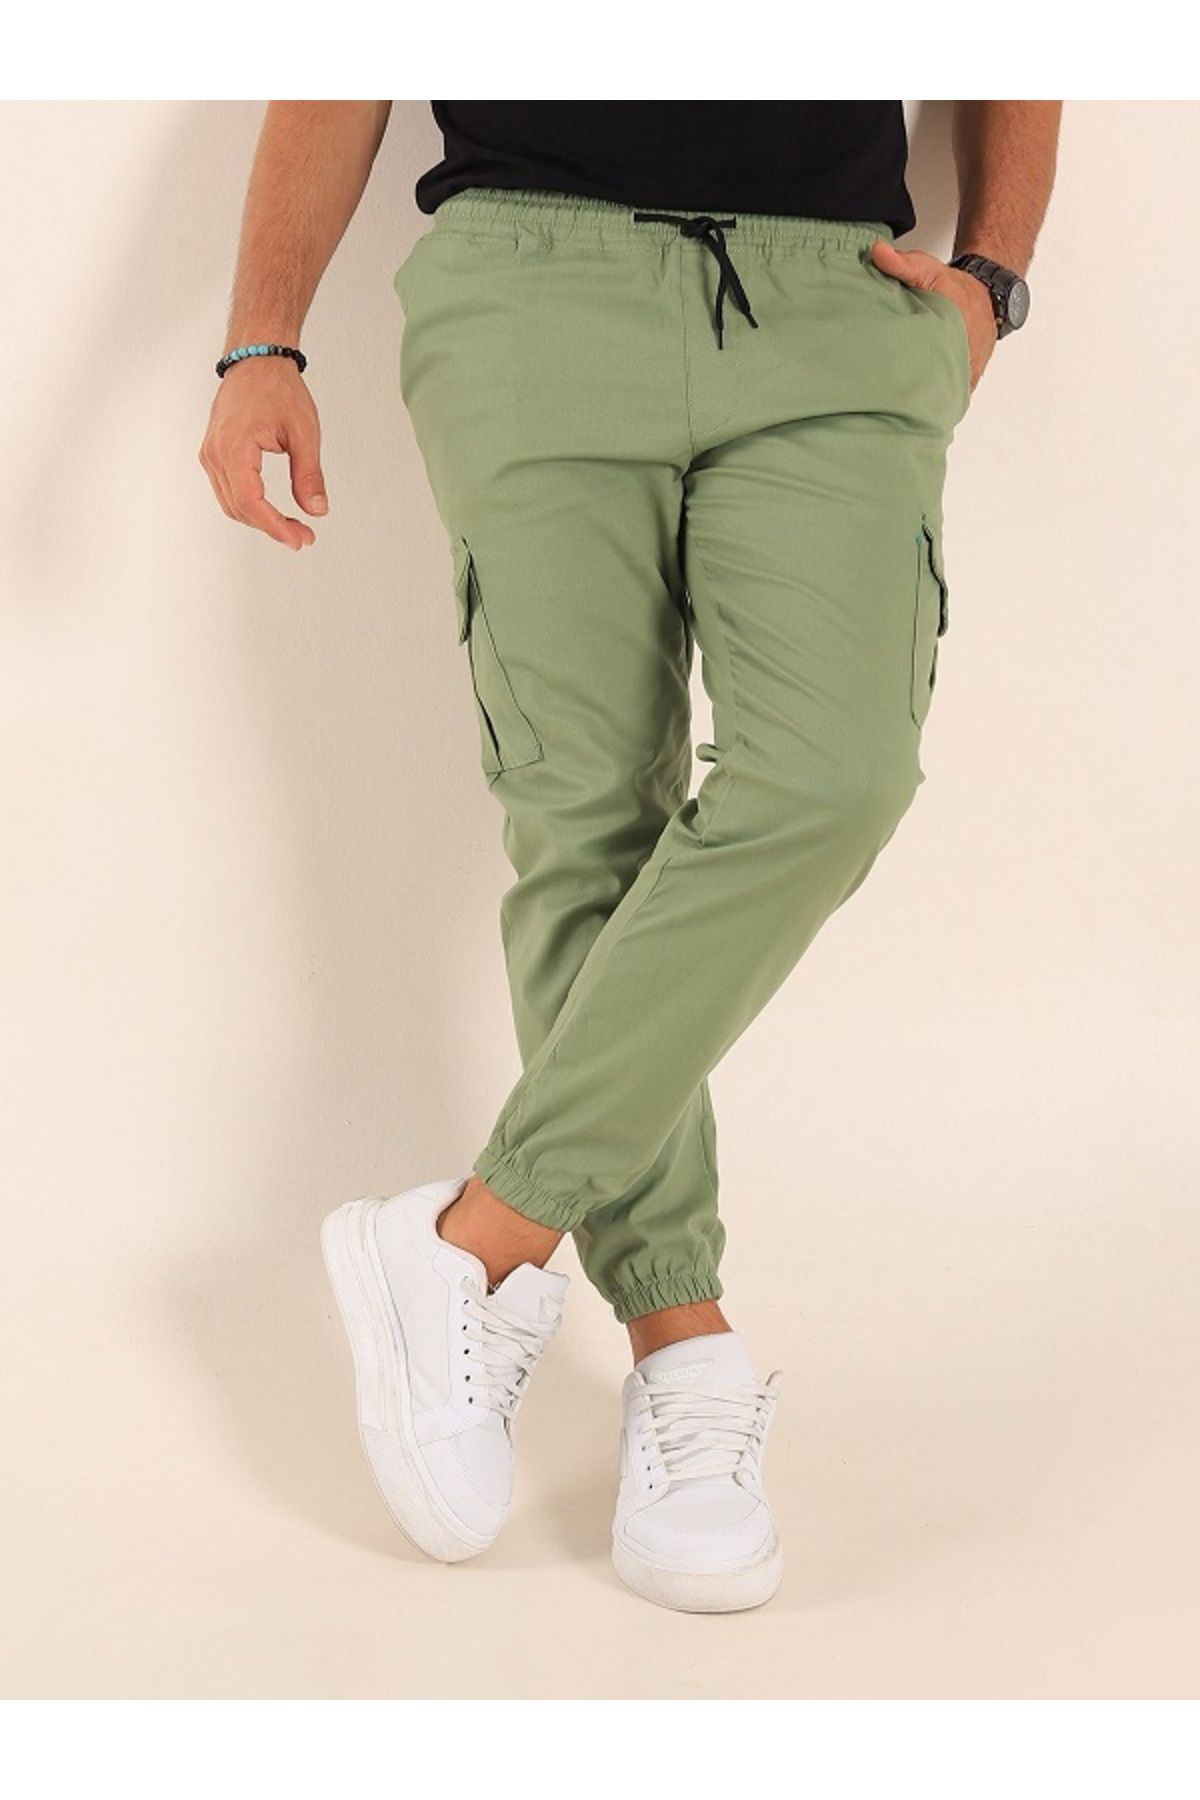 shn sportswear likralı beli ve paçası lastikli yeşil kargo pantolon